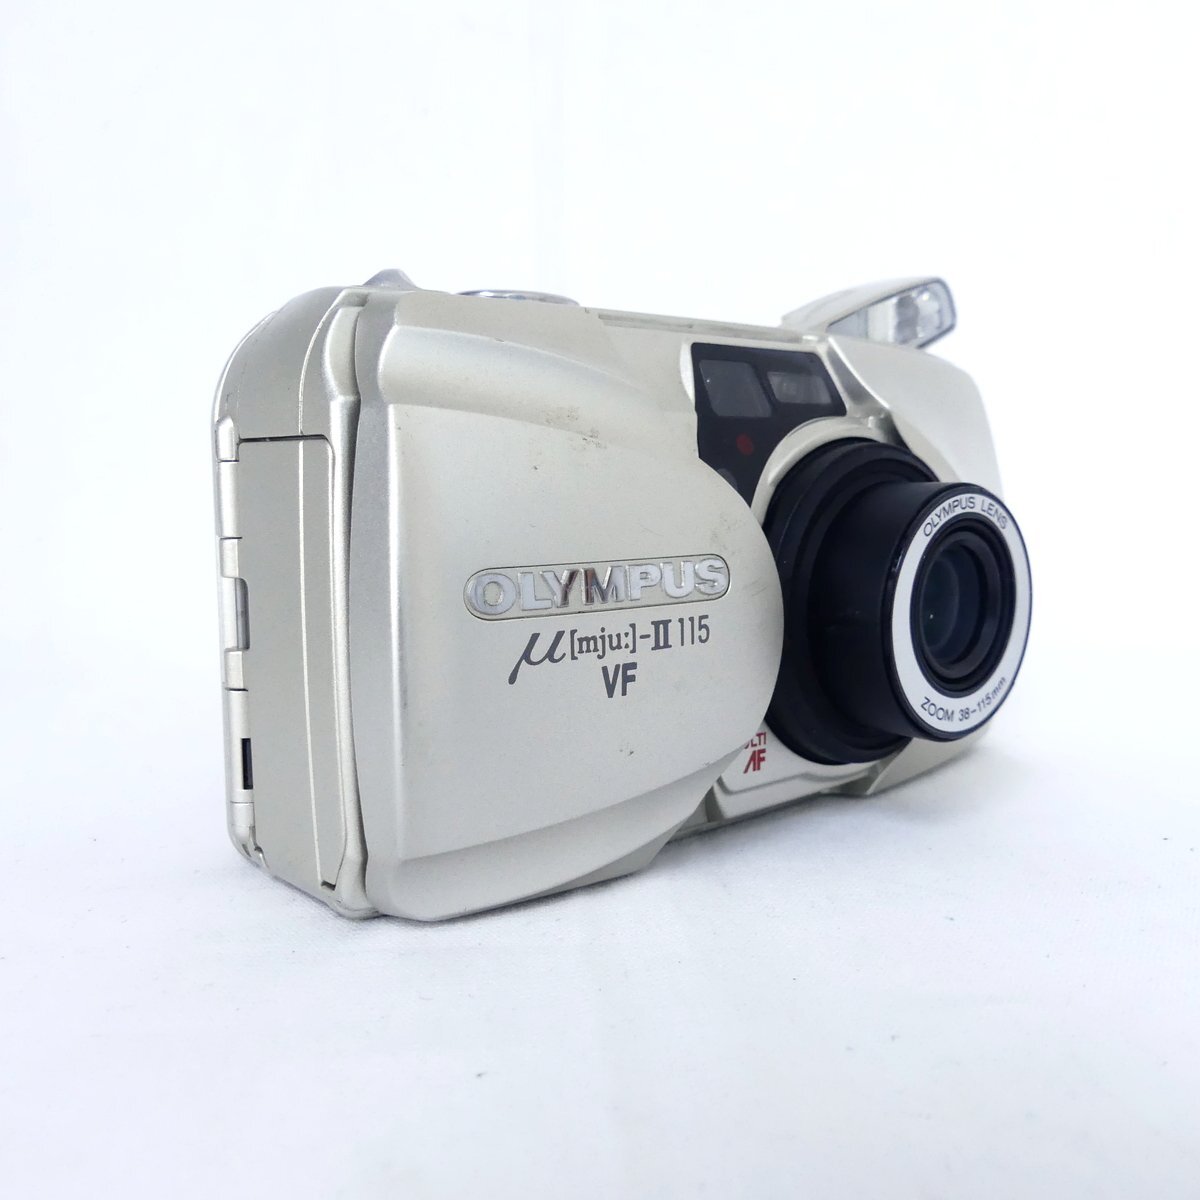 OLYMPUS オリンパス μ-II 115 VF フィルムカメラ コンパクトカメラ 通電OK USED /2404Cの画像2